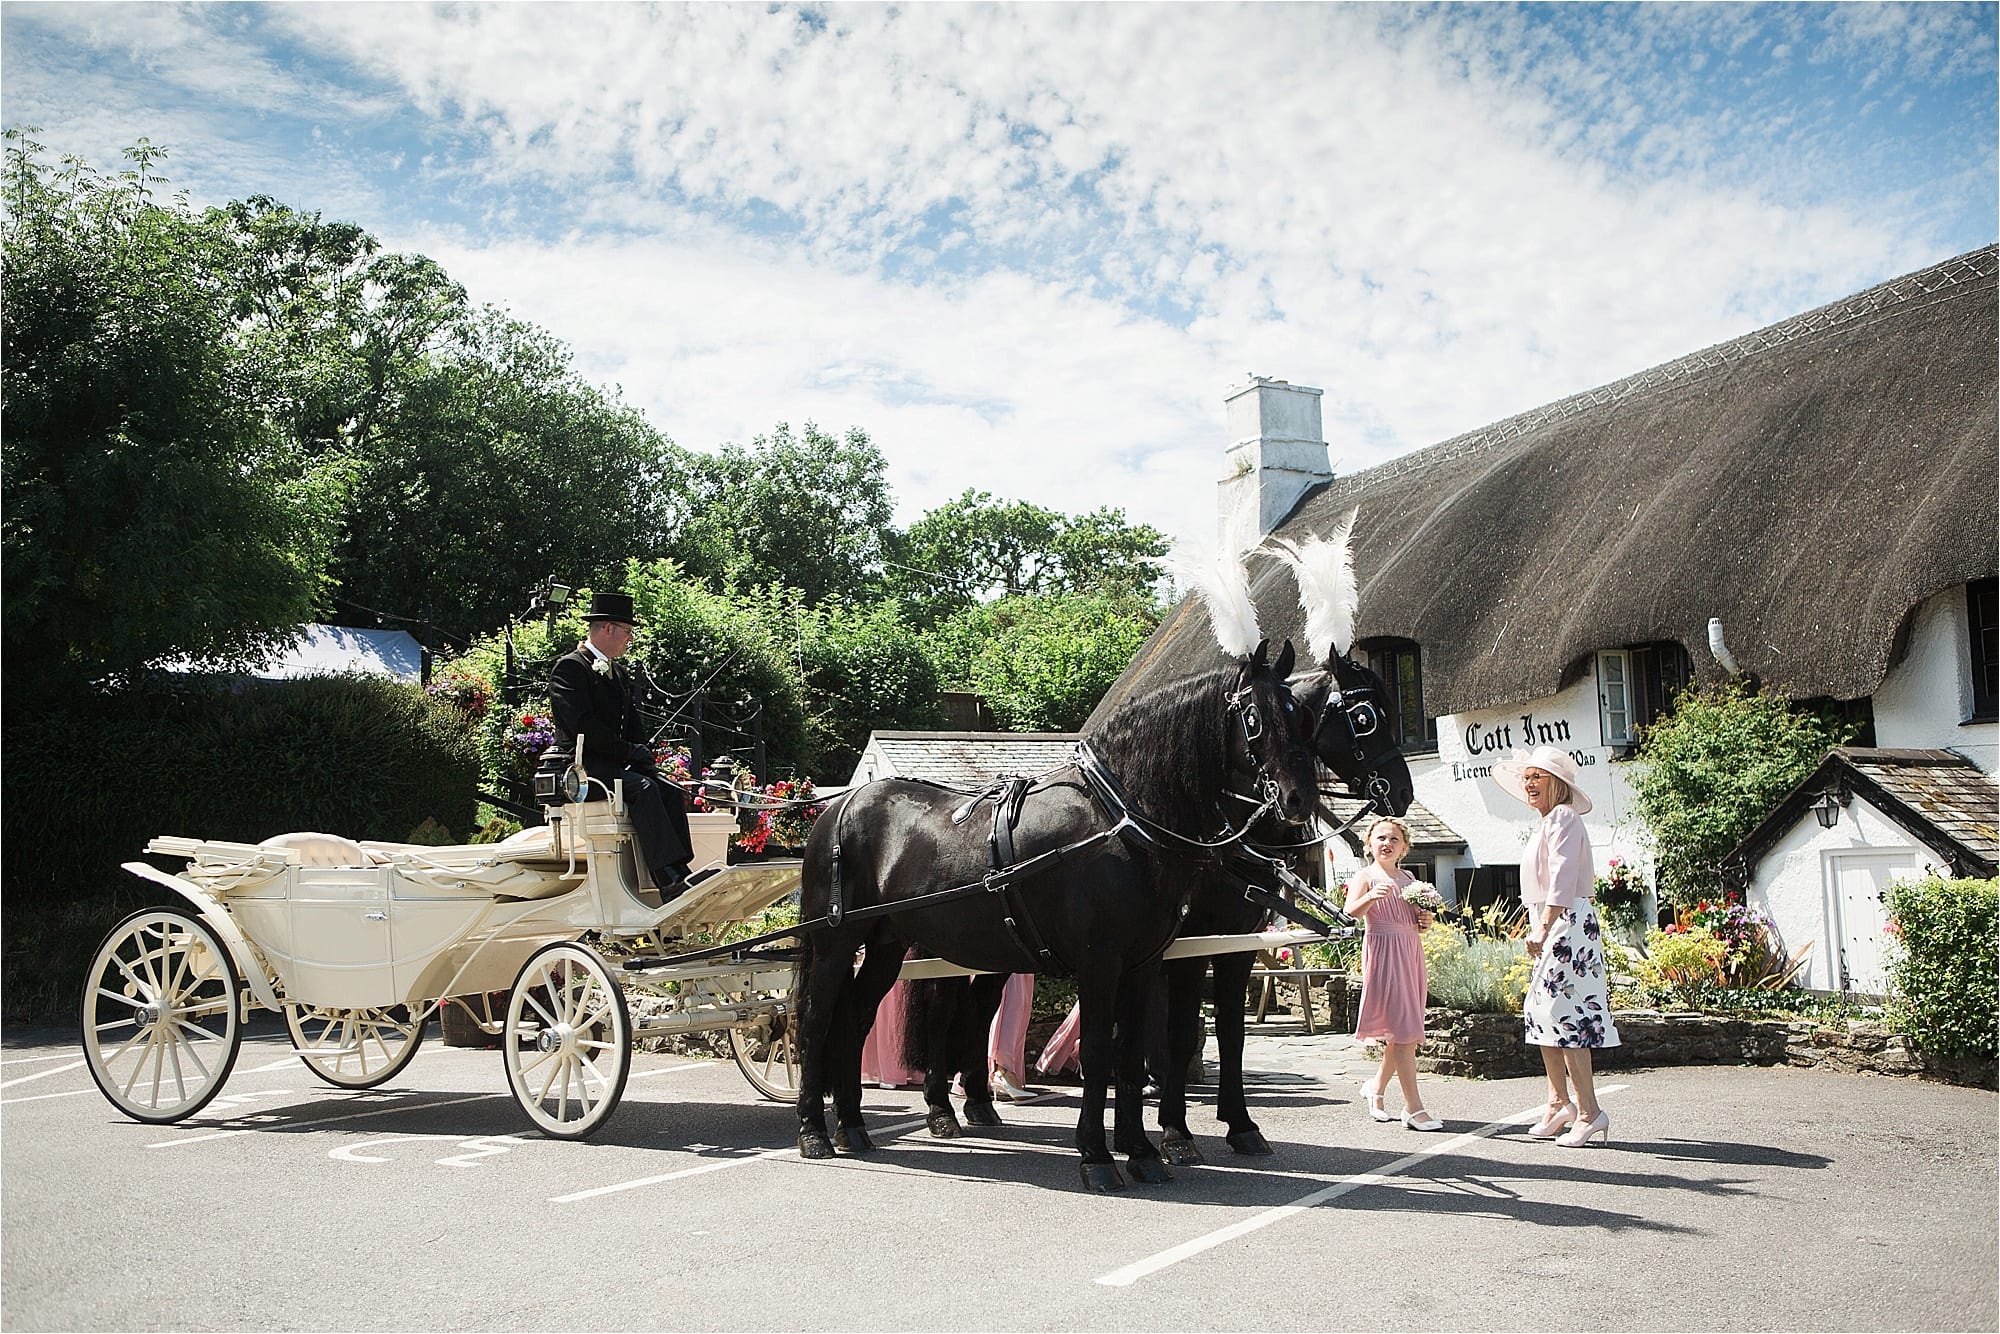 A quintessential English wedding in Devon